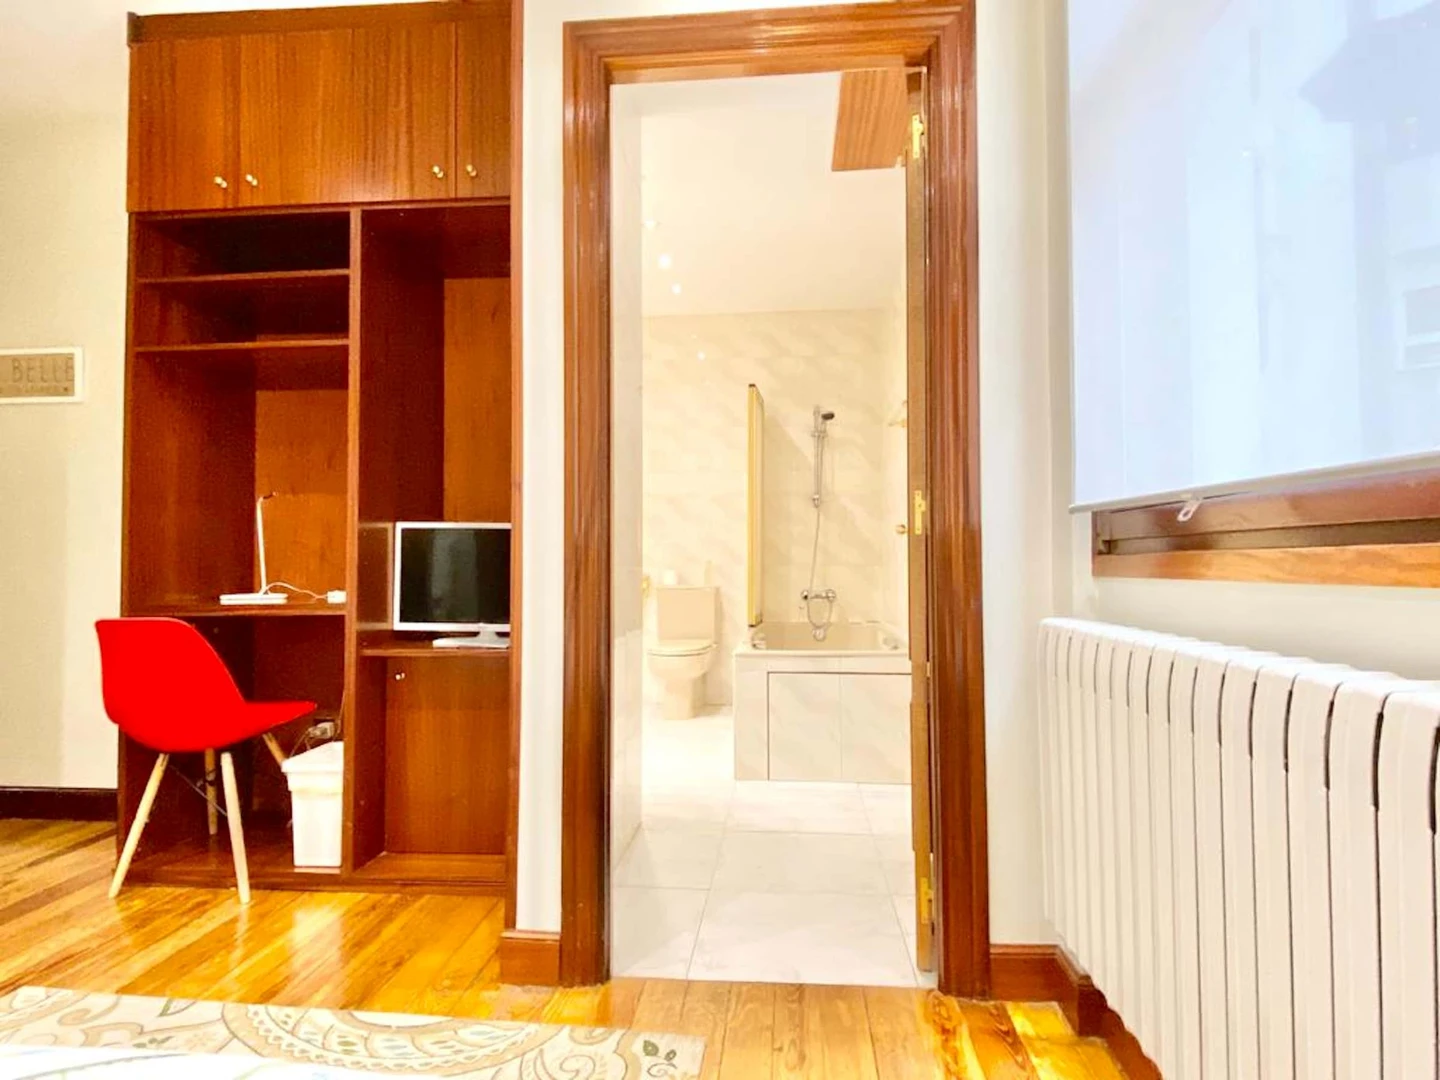 Alquiler de habitaciones por meses en Bilbao